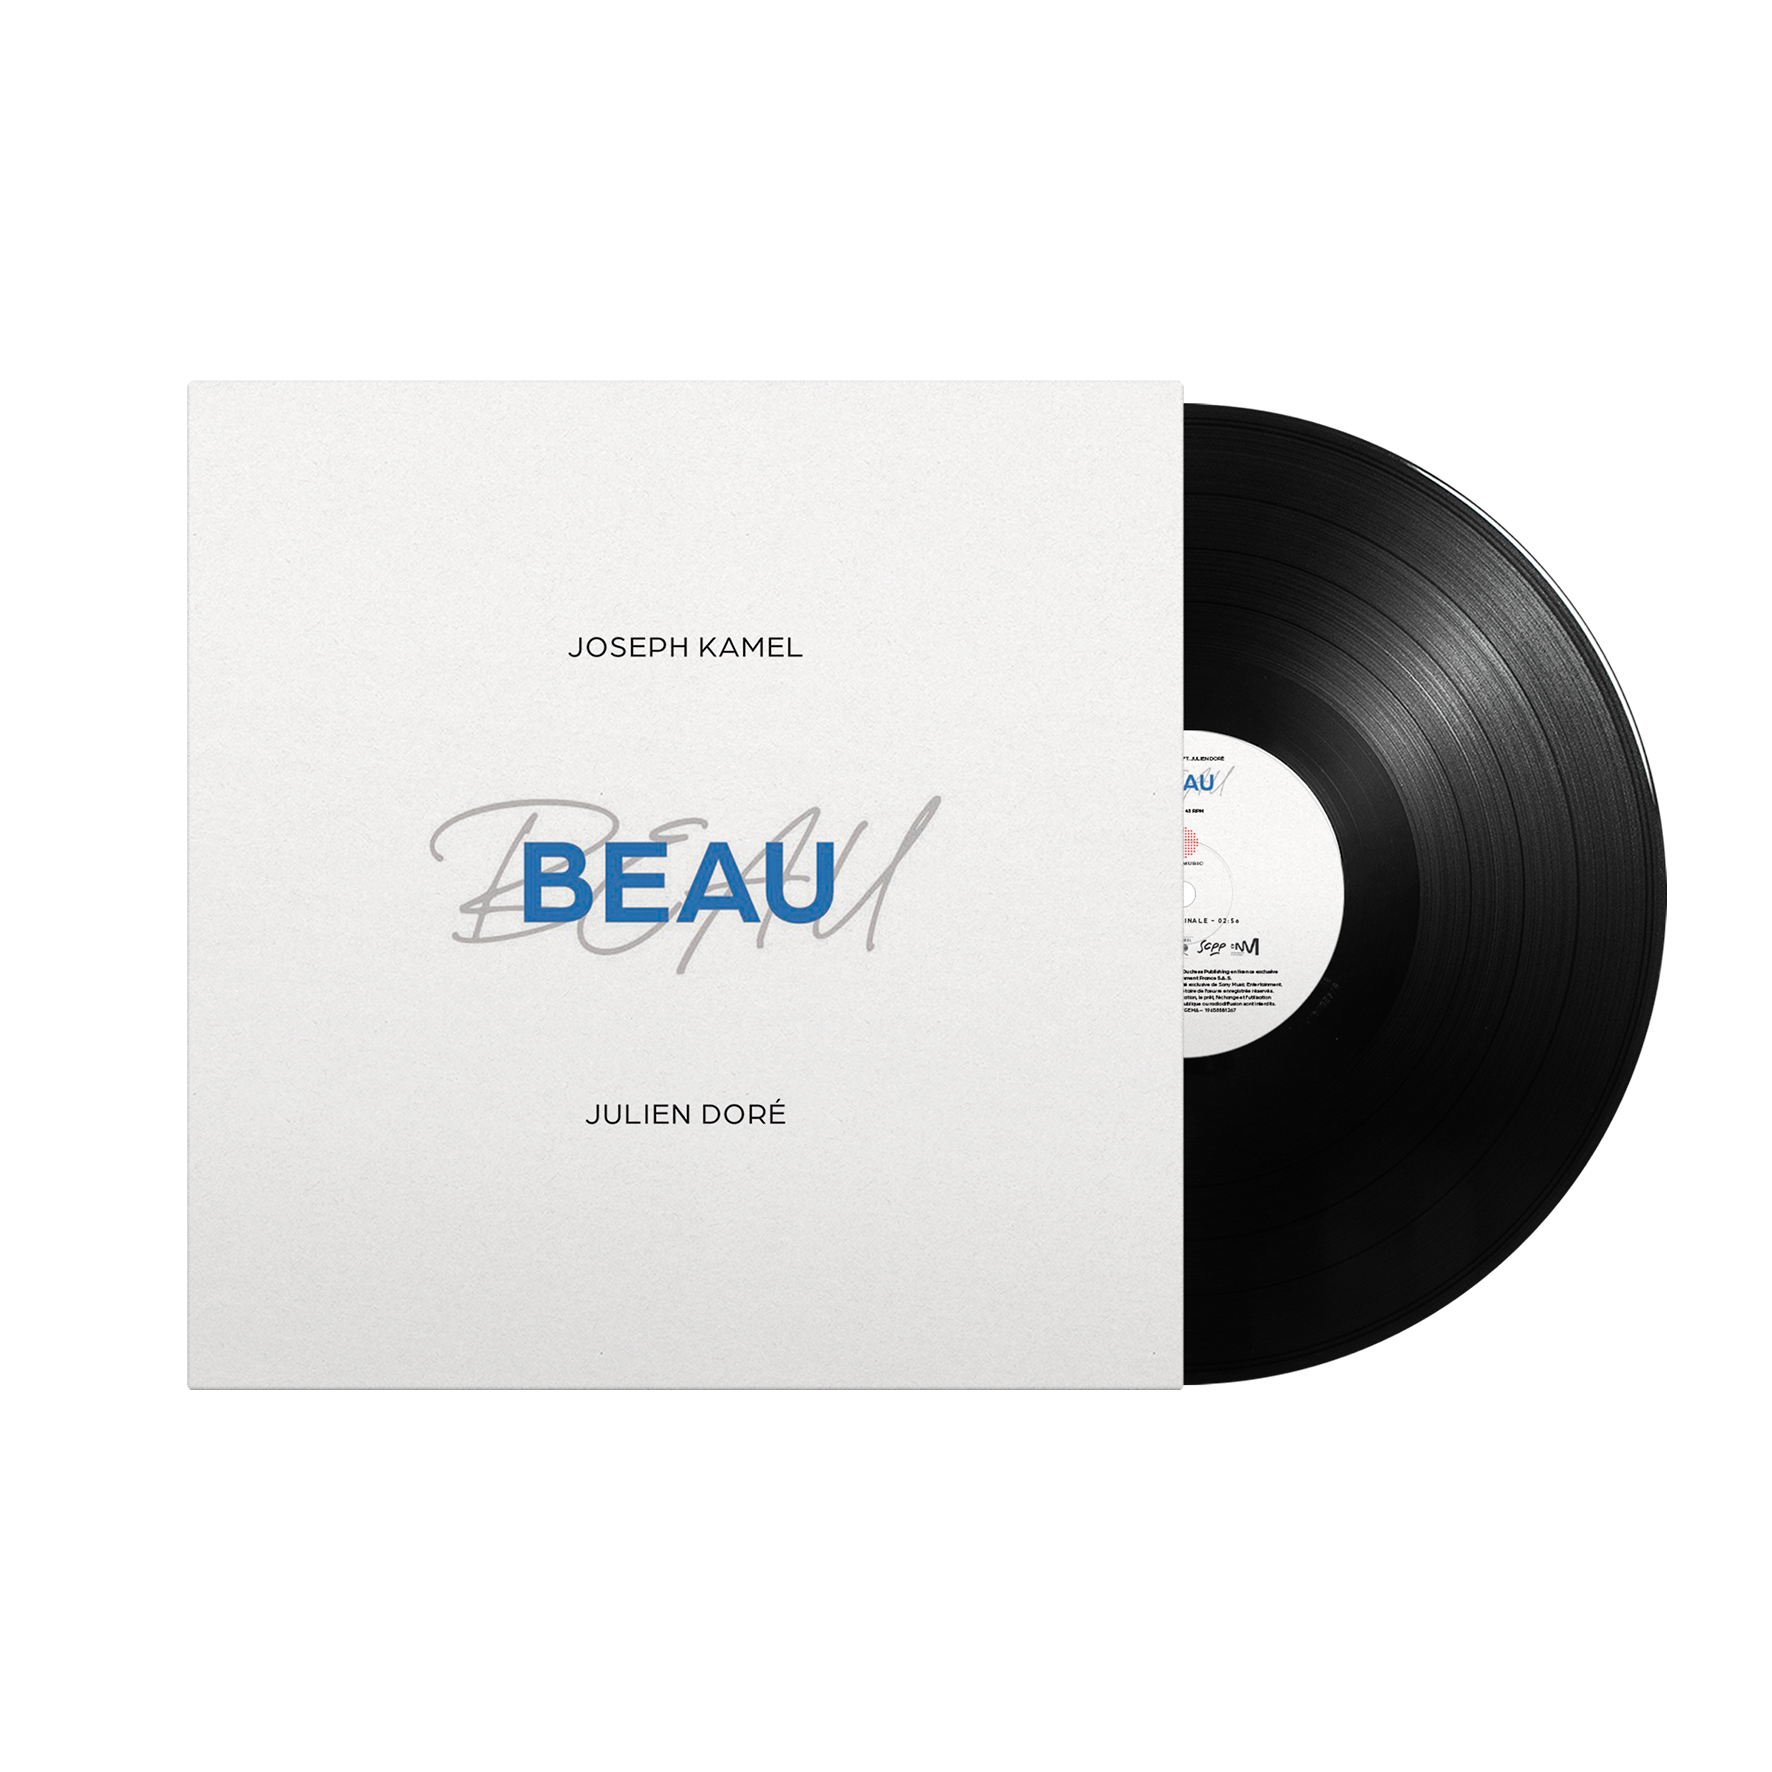 Vinyle 45 tours "Beau" feat Julien Doré